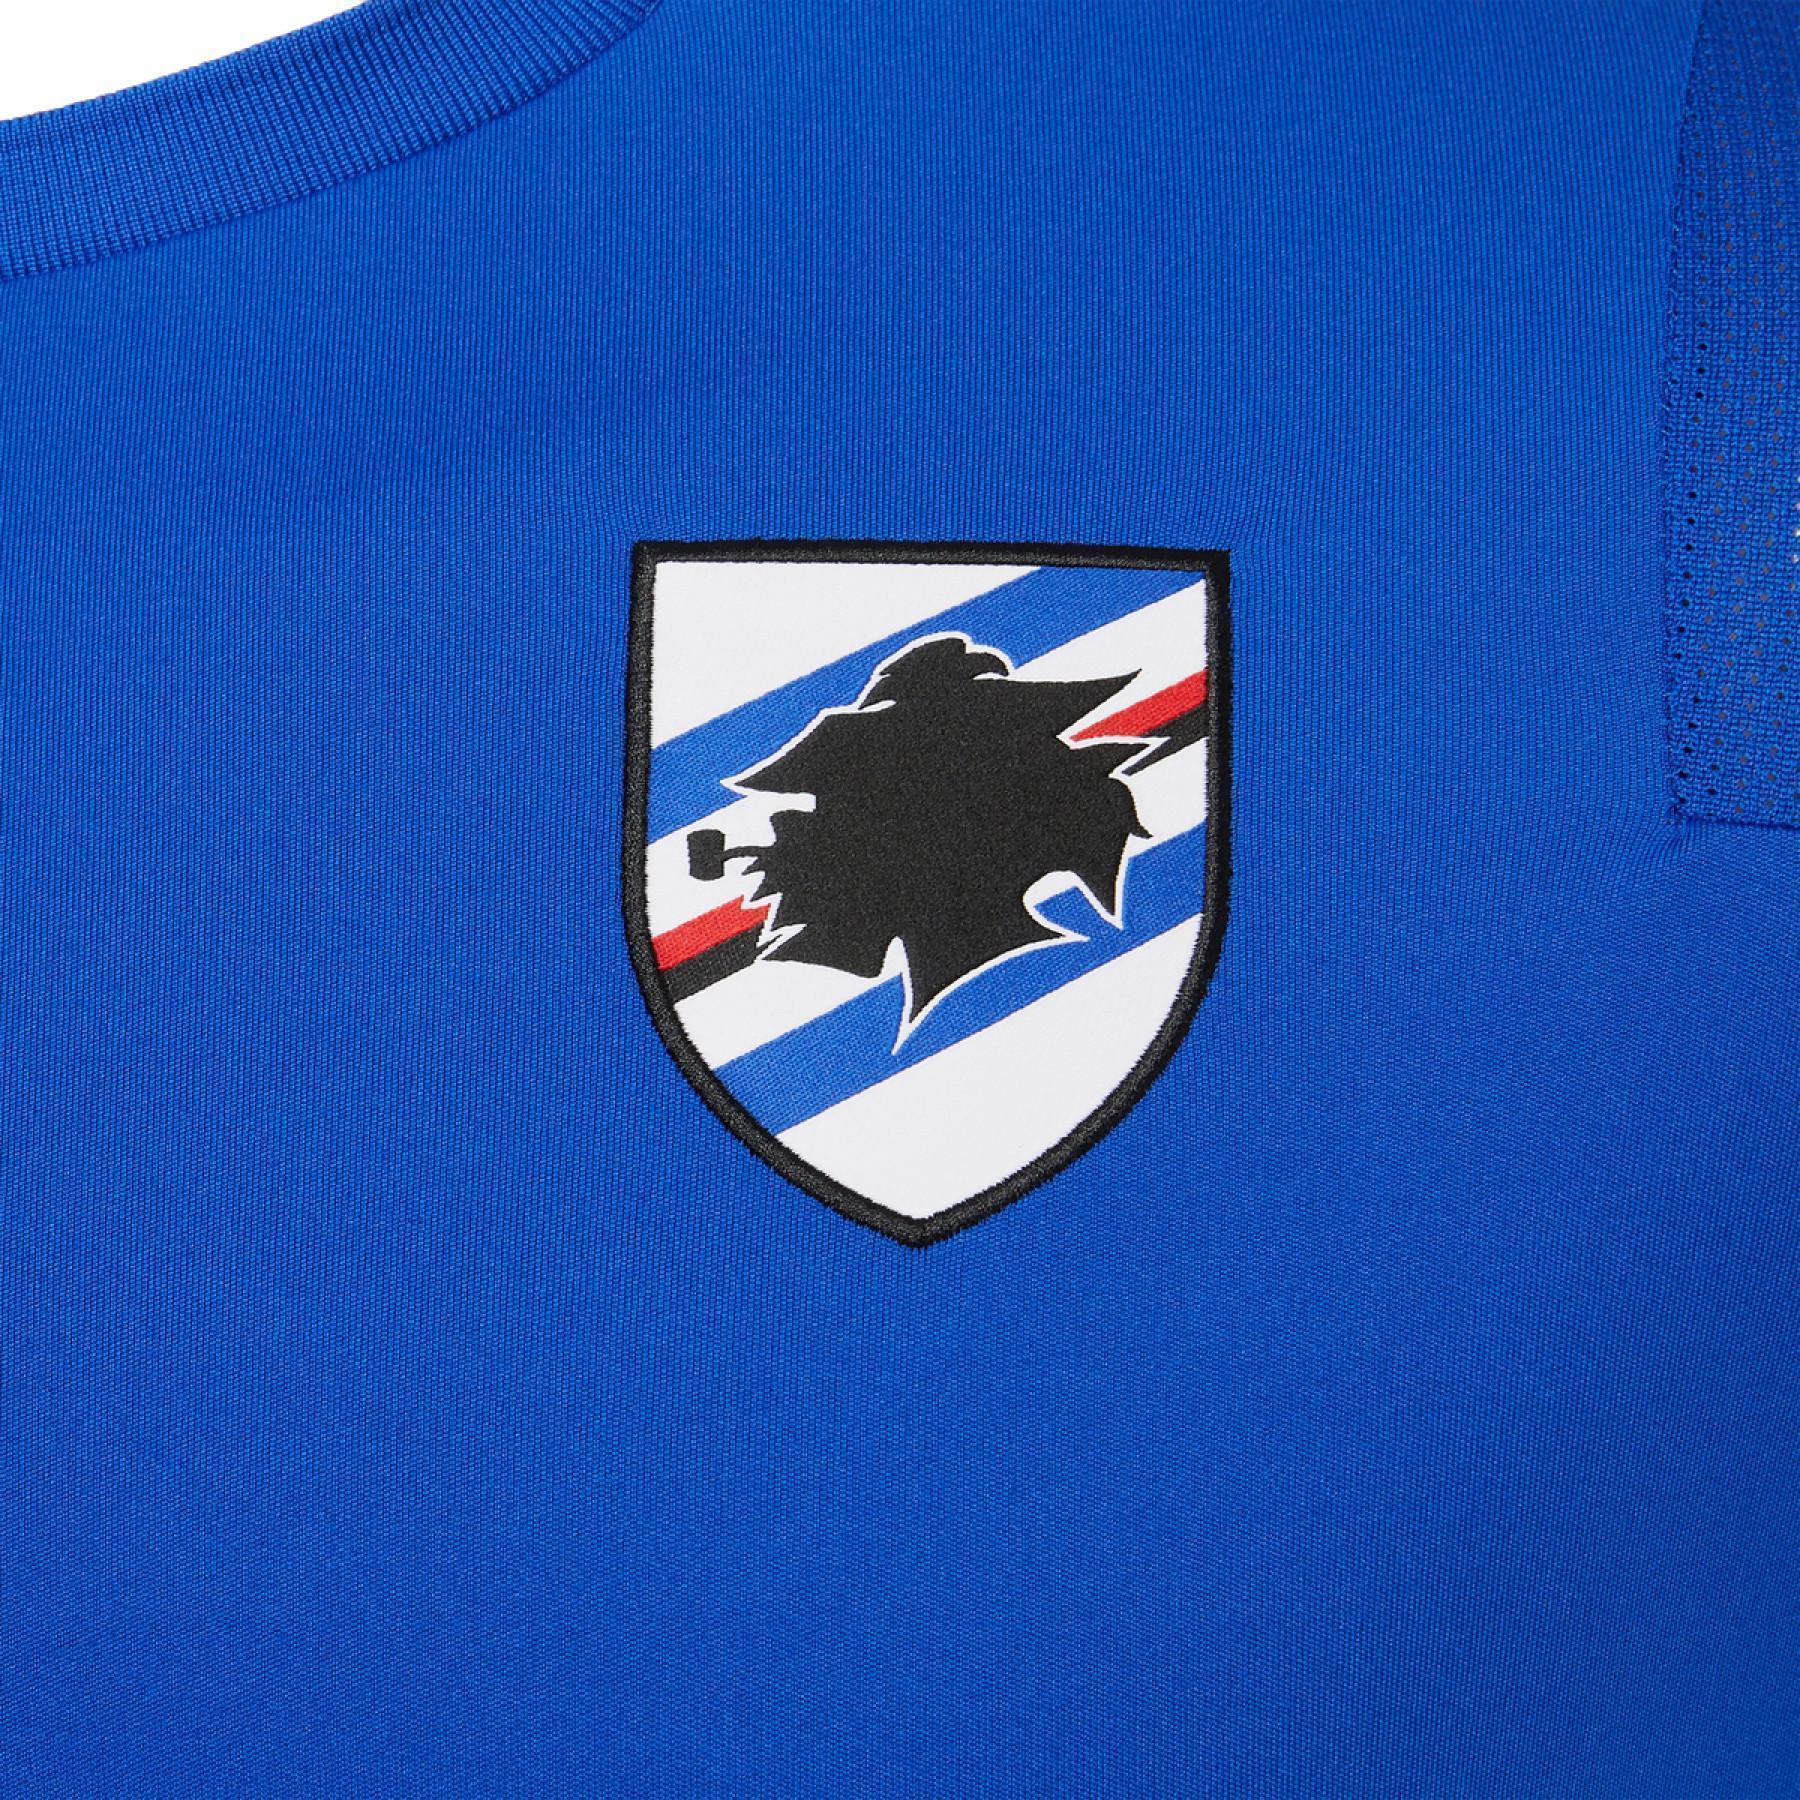 T-shirt supporter UC Sampdoria 2020/21